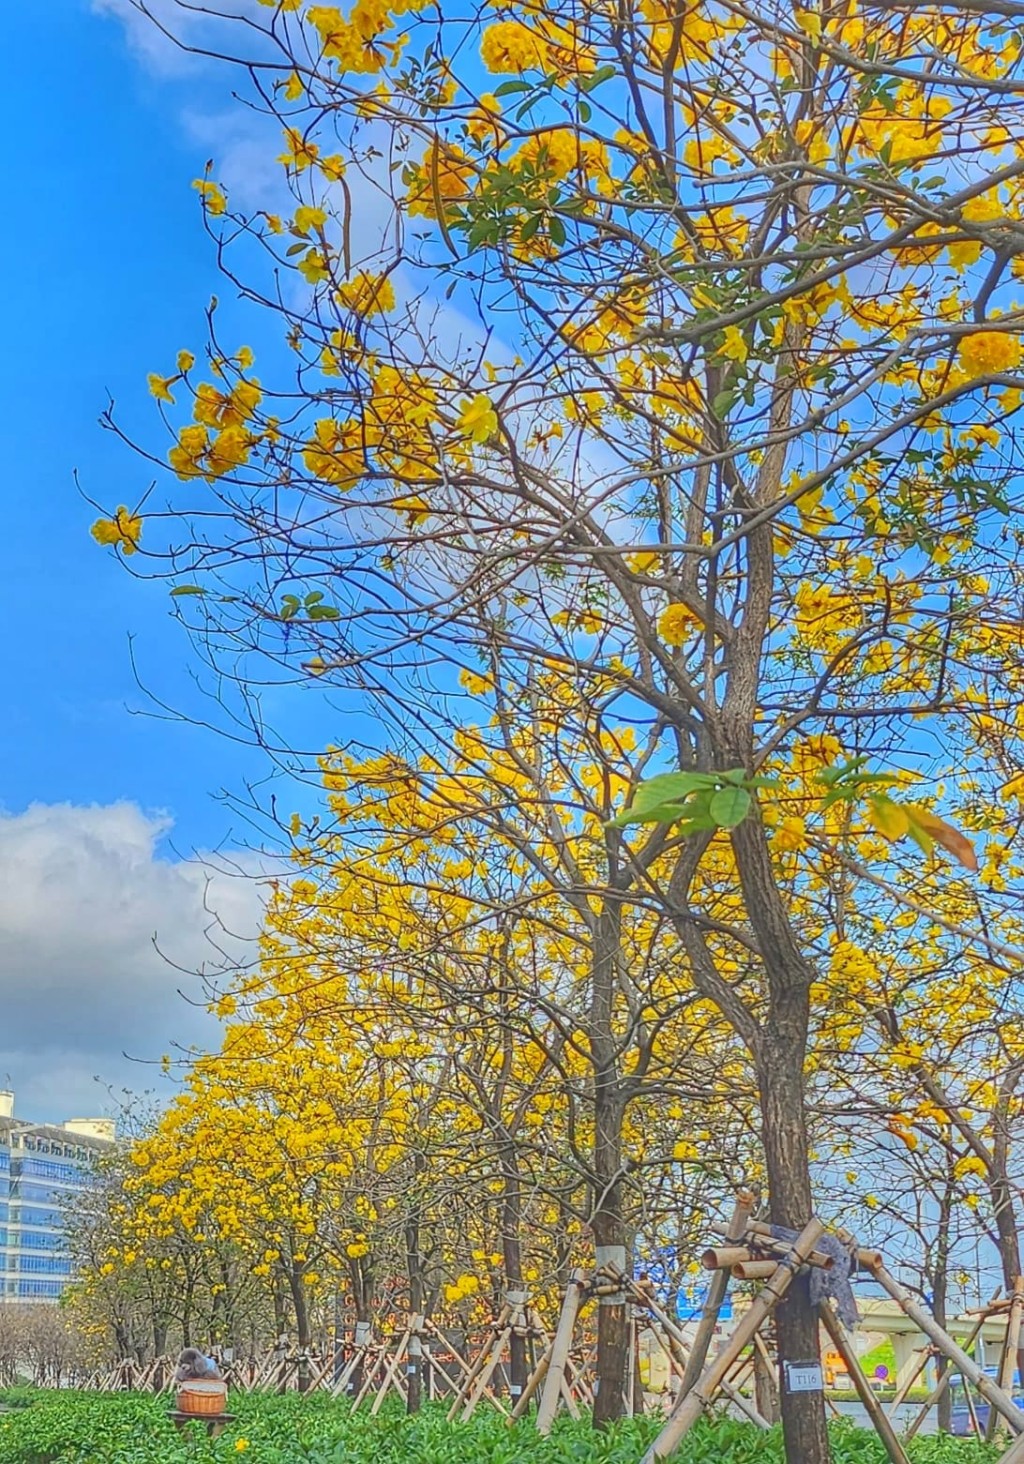 滿樹風鈴木花朵形成大片金黃色（圖片來源：FB @ Helen Li 提供）